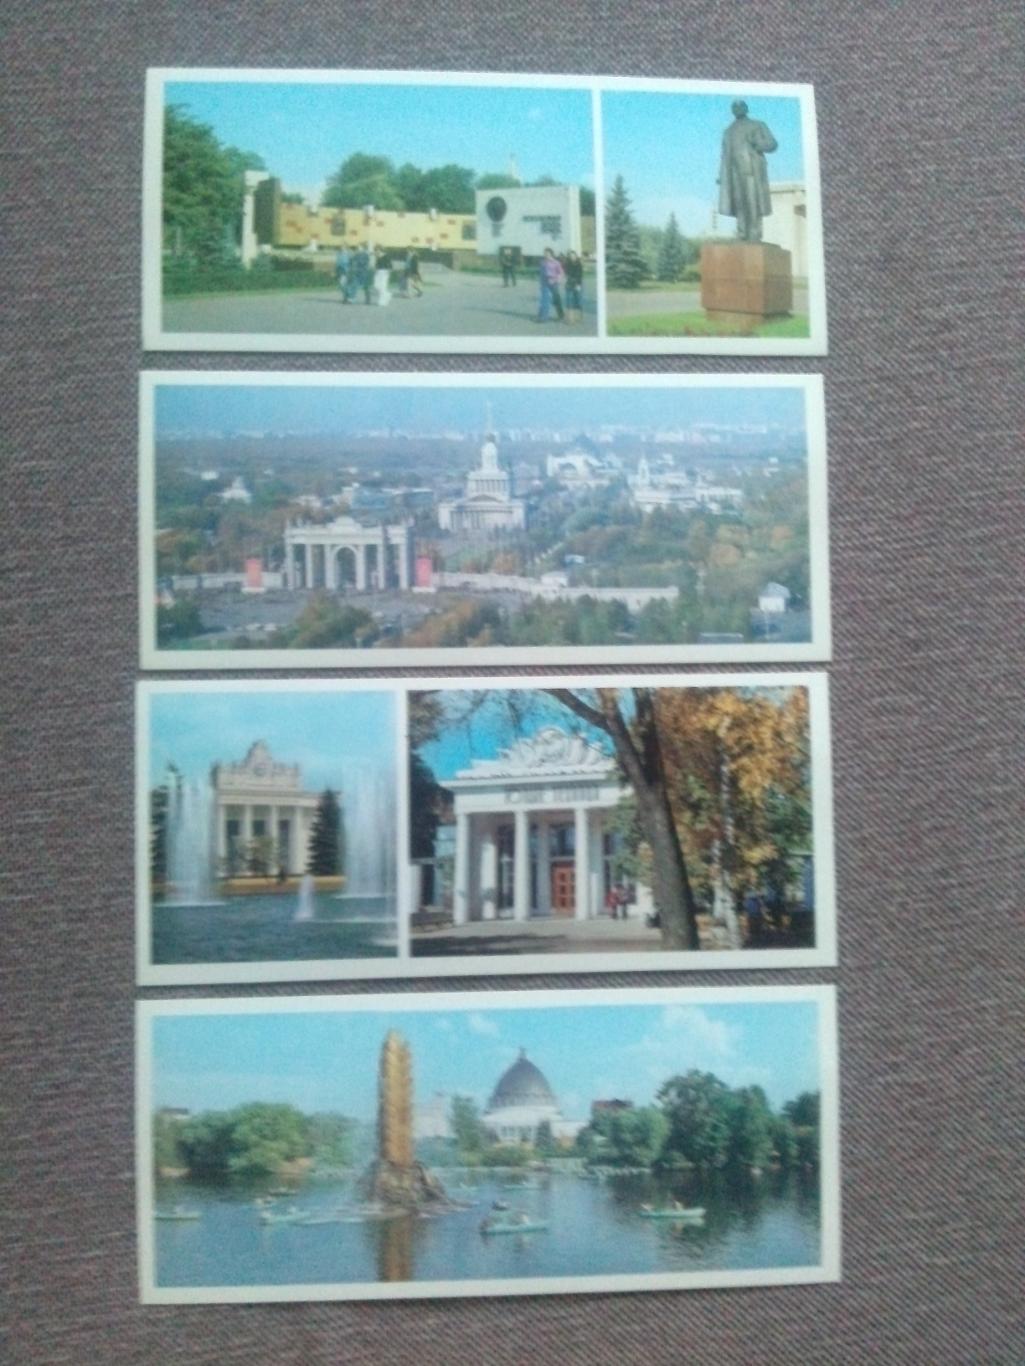 Памятные места СССР : ВДНХ СССР 1985 г. полный набор - 15 открыток (Выставка) 4